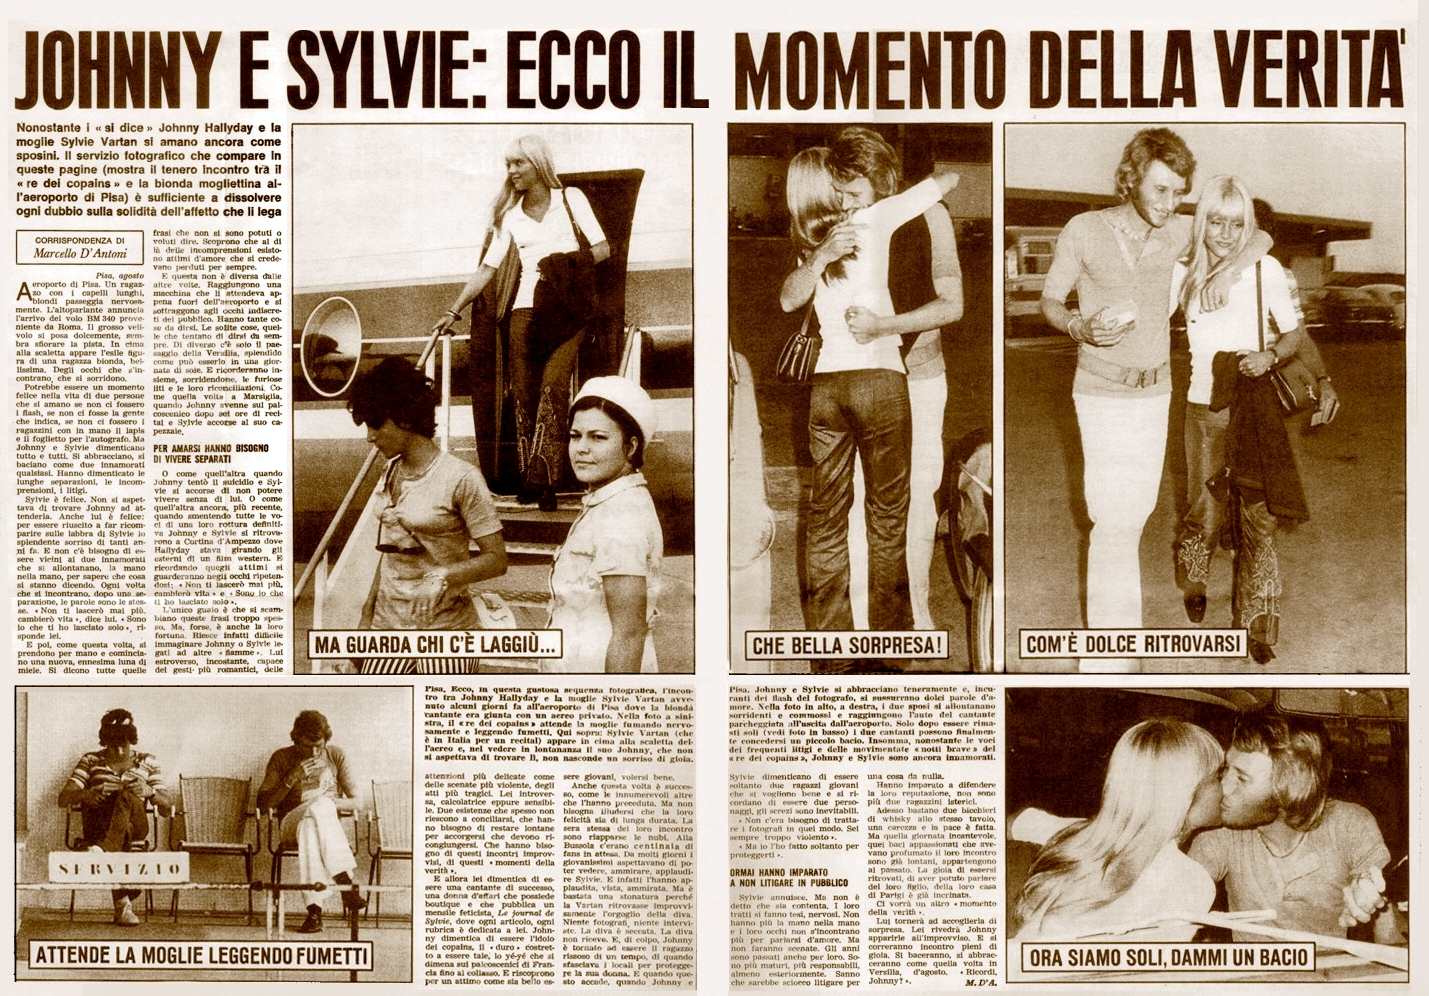 Magazine italien 1969 Article "Johnny e Sylvie : ecco il momento della verita"